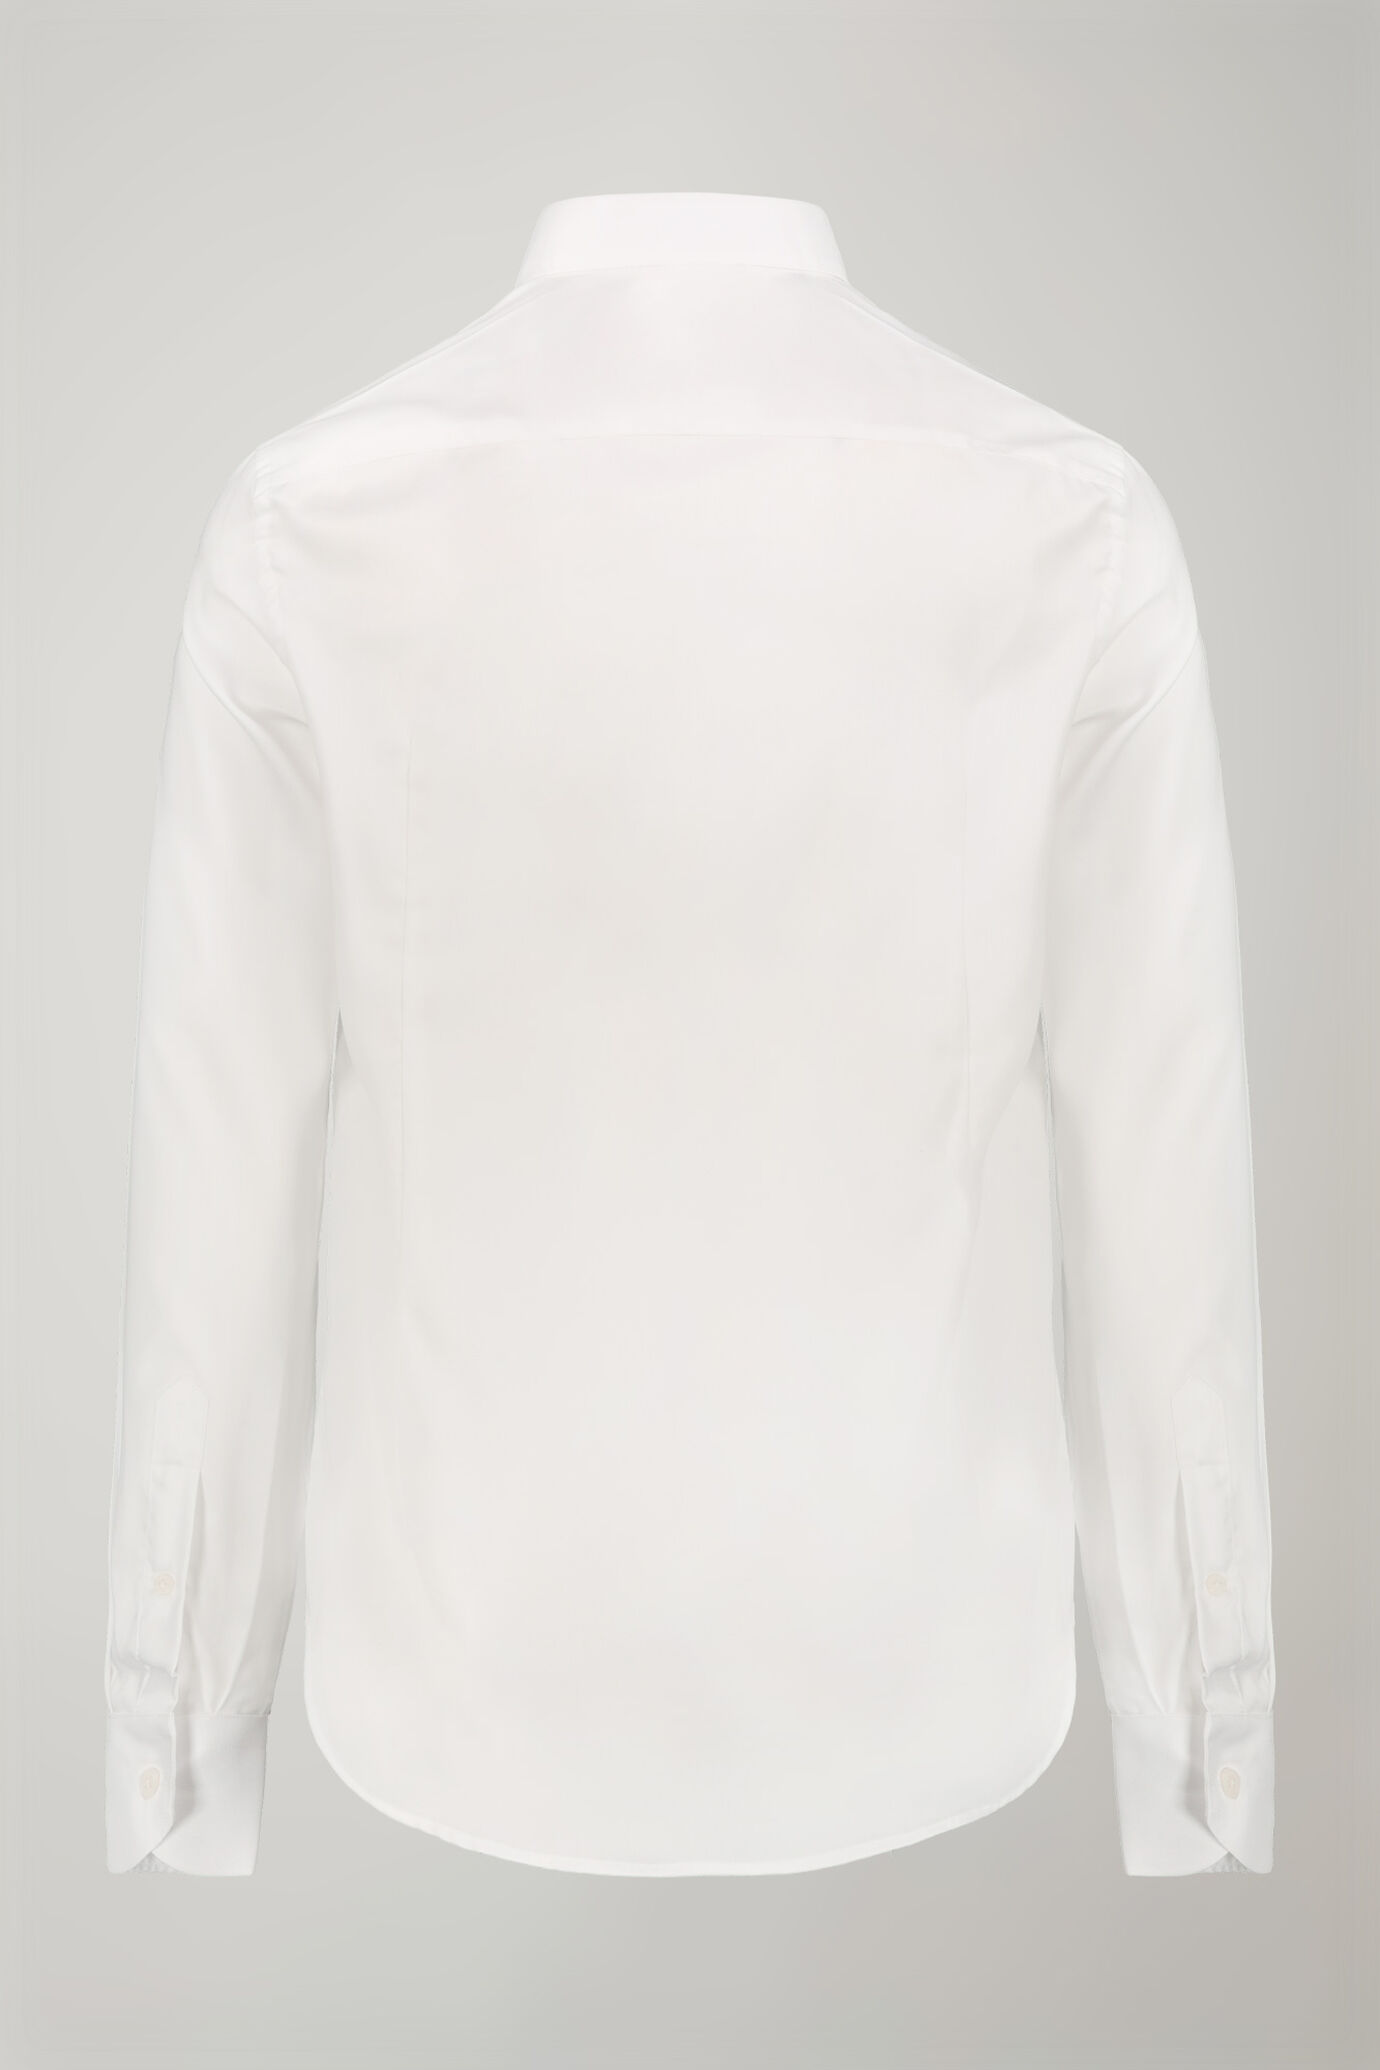 Camicia uomo collo classico 100% cotone tessuto oxford leggero tinta unita regular fit image number 6